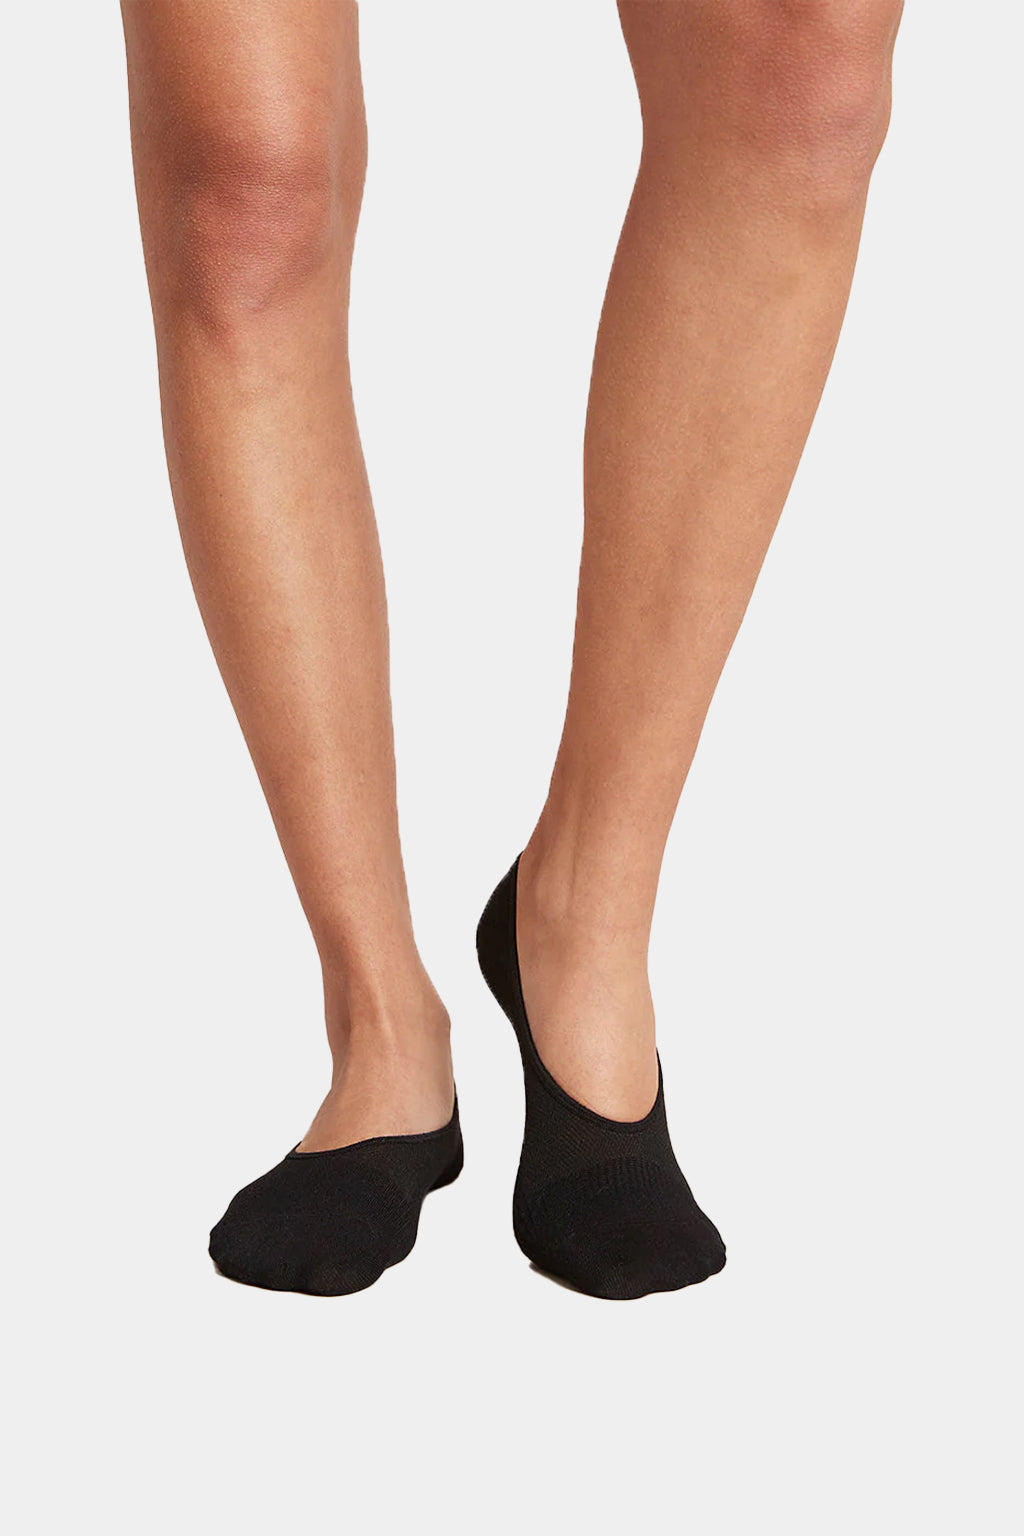 Boody - Women's Hidden Socks (Pairs of Three)